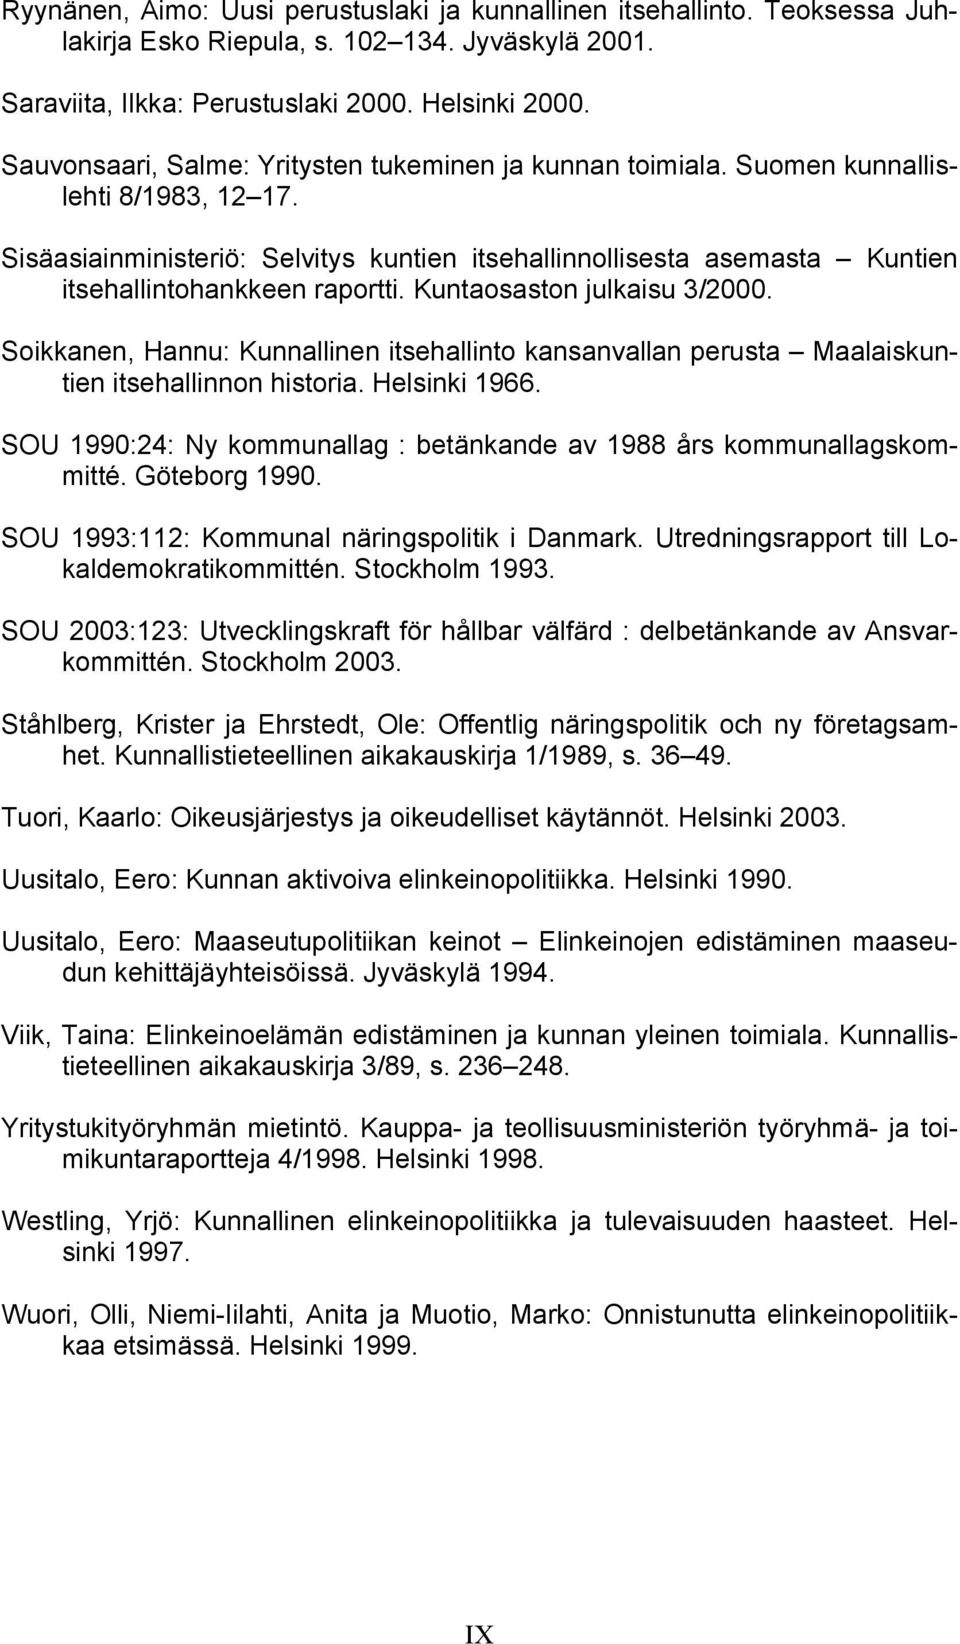 Sisäasiainministeriö: Selvitys kuntien itsehallinnollisesta asemasta Kuntien itsehallintohankkeen raportti. Kuntaosaston julkaisu 3/2000.